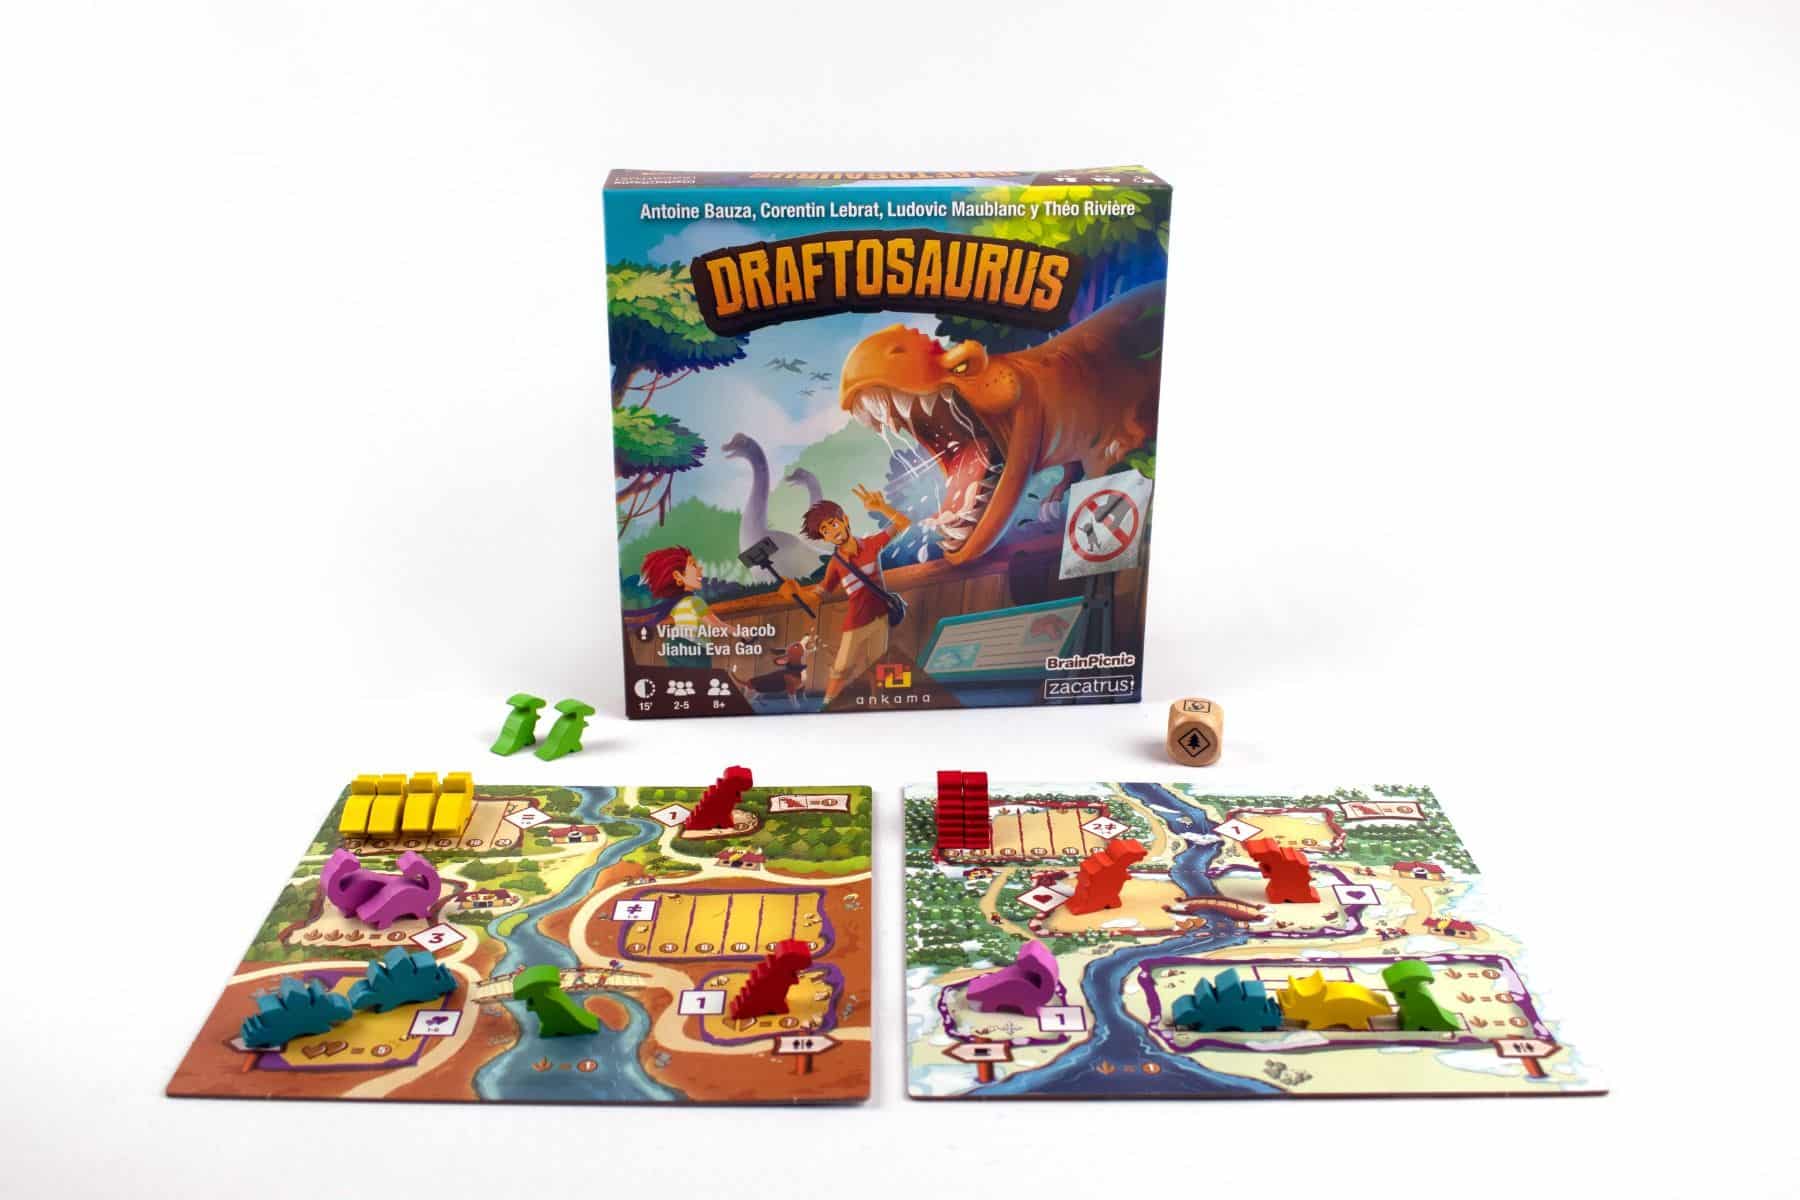 Draftosauros